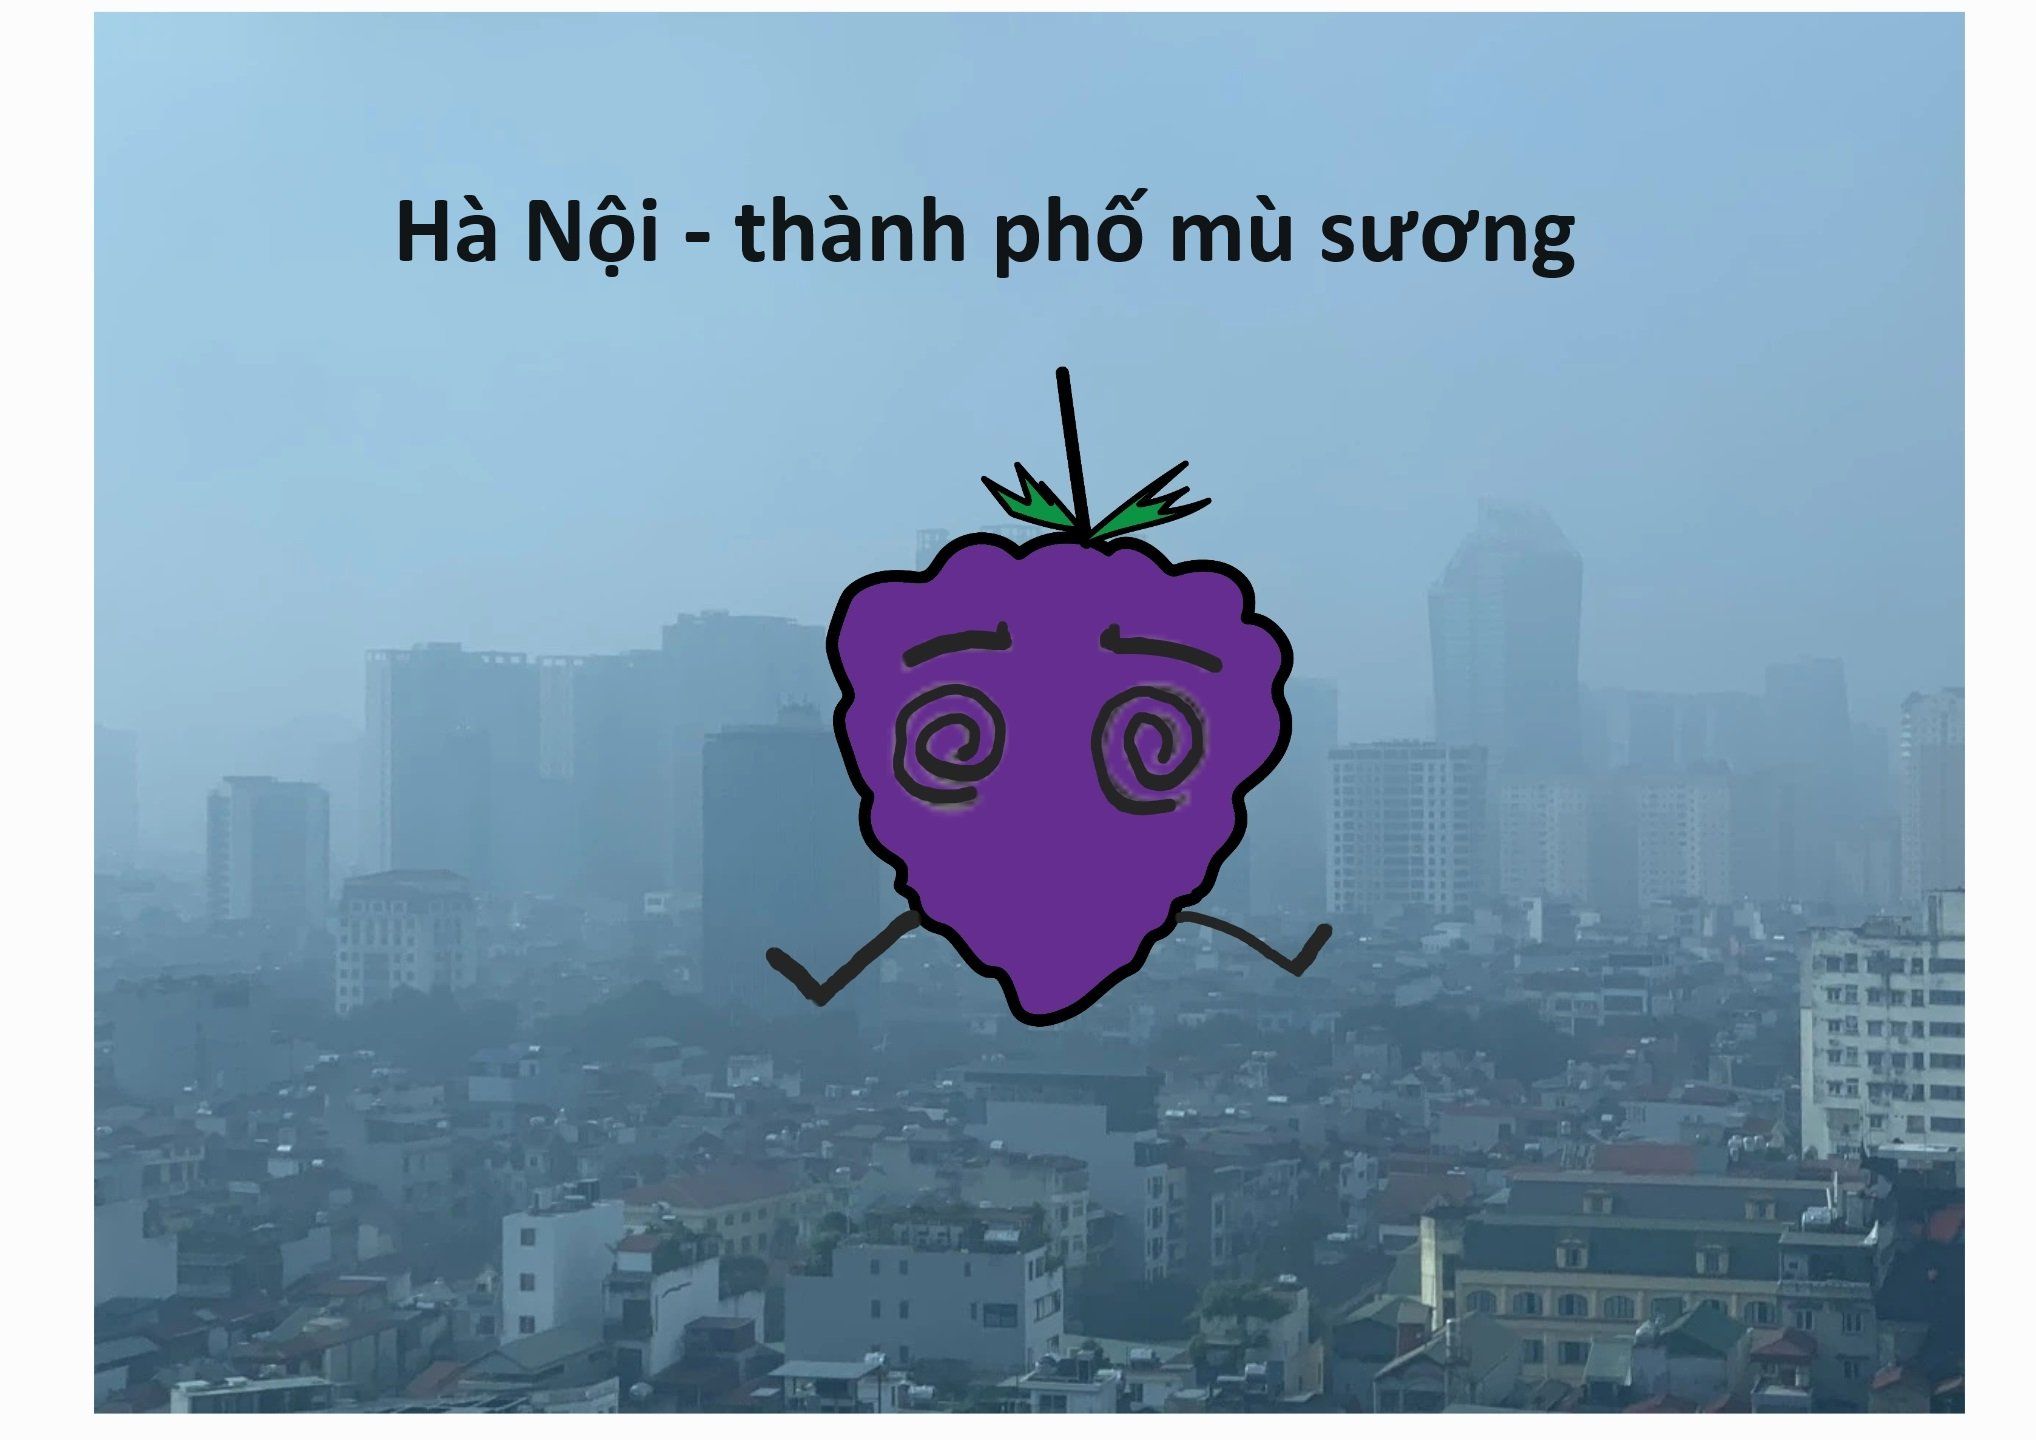 Hà Nội - Thành phố mù sương